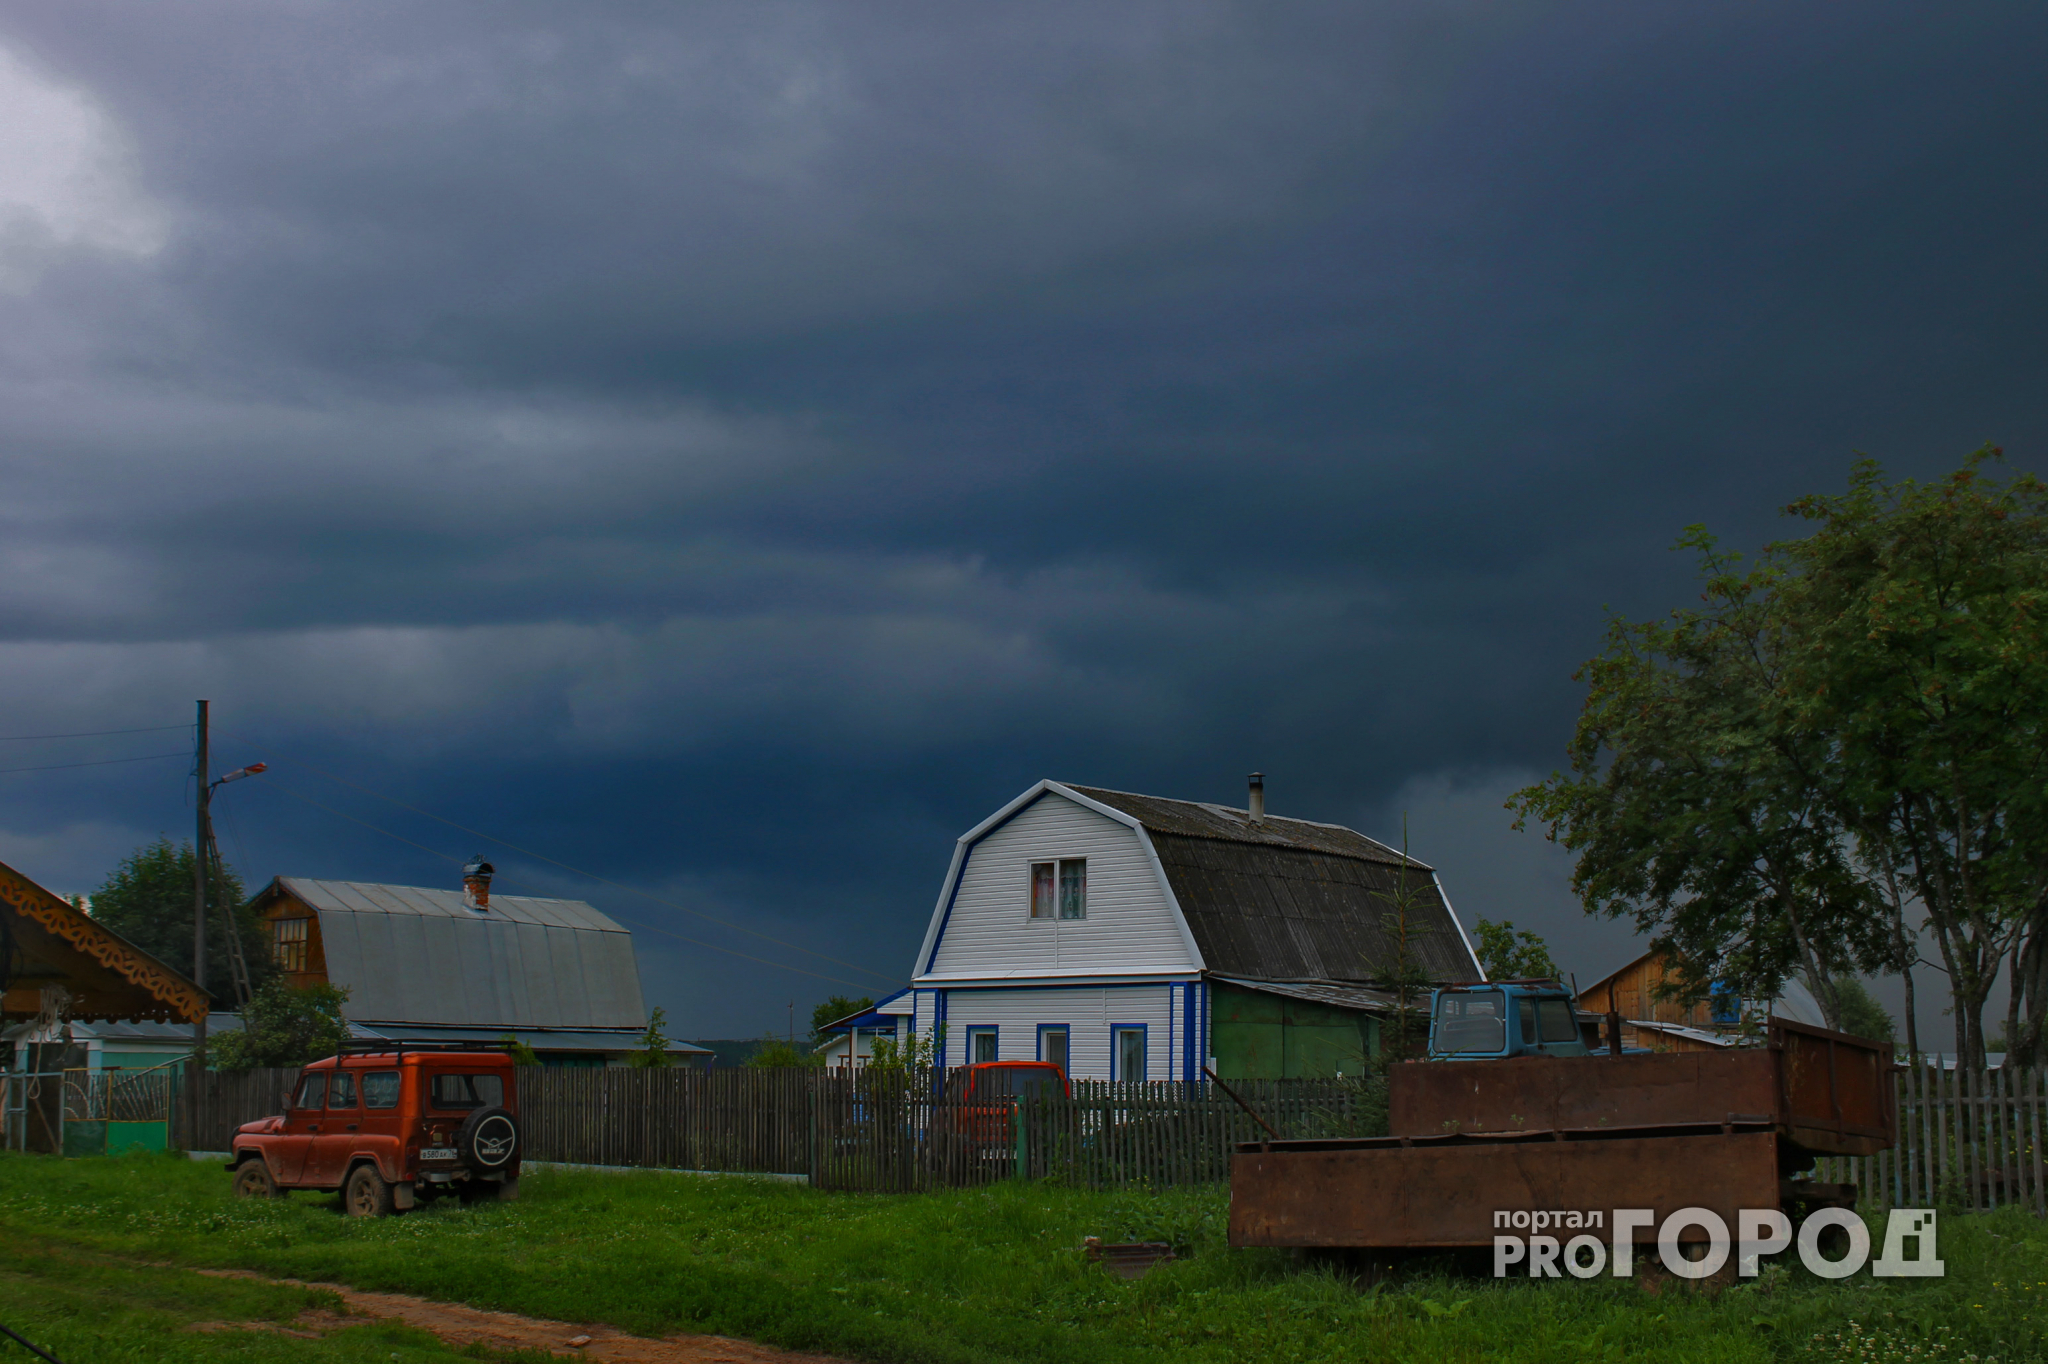 Прогноз погоды: в Чепецке на неделе будет пасмурно и дождливо